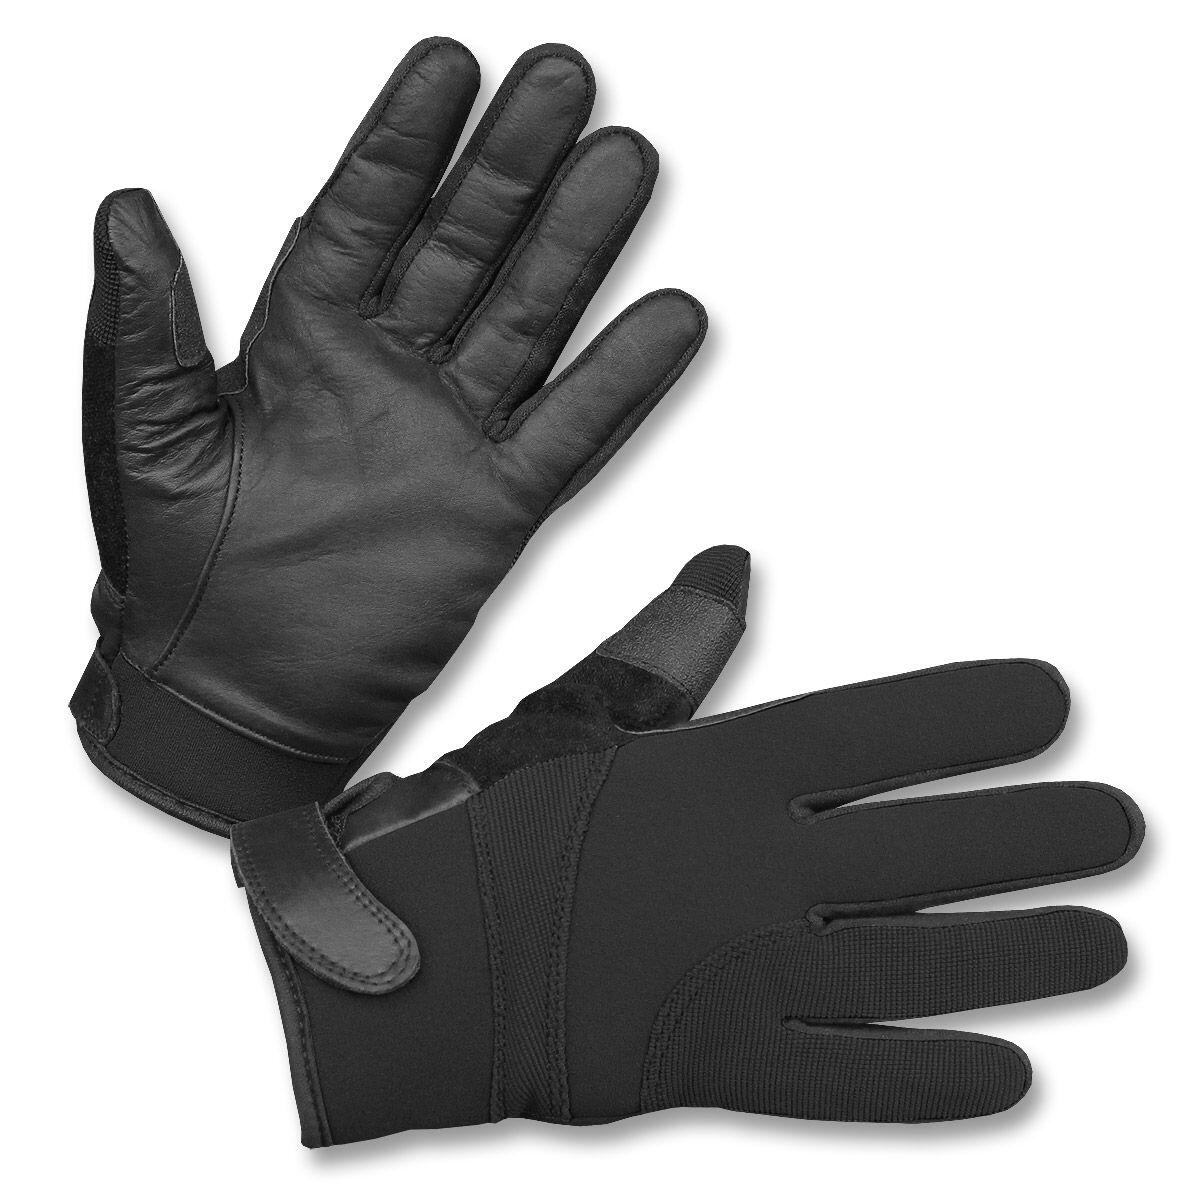 Buy Snitsikre handsker - / Læder - Offer: 210,00 - VAGT / Handskar,-